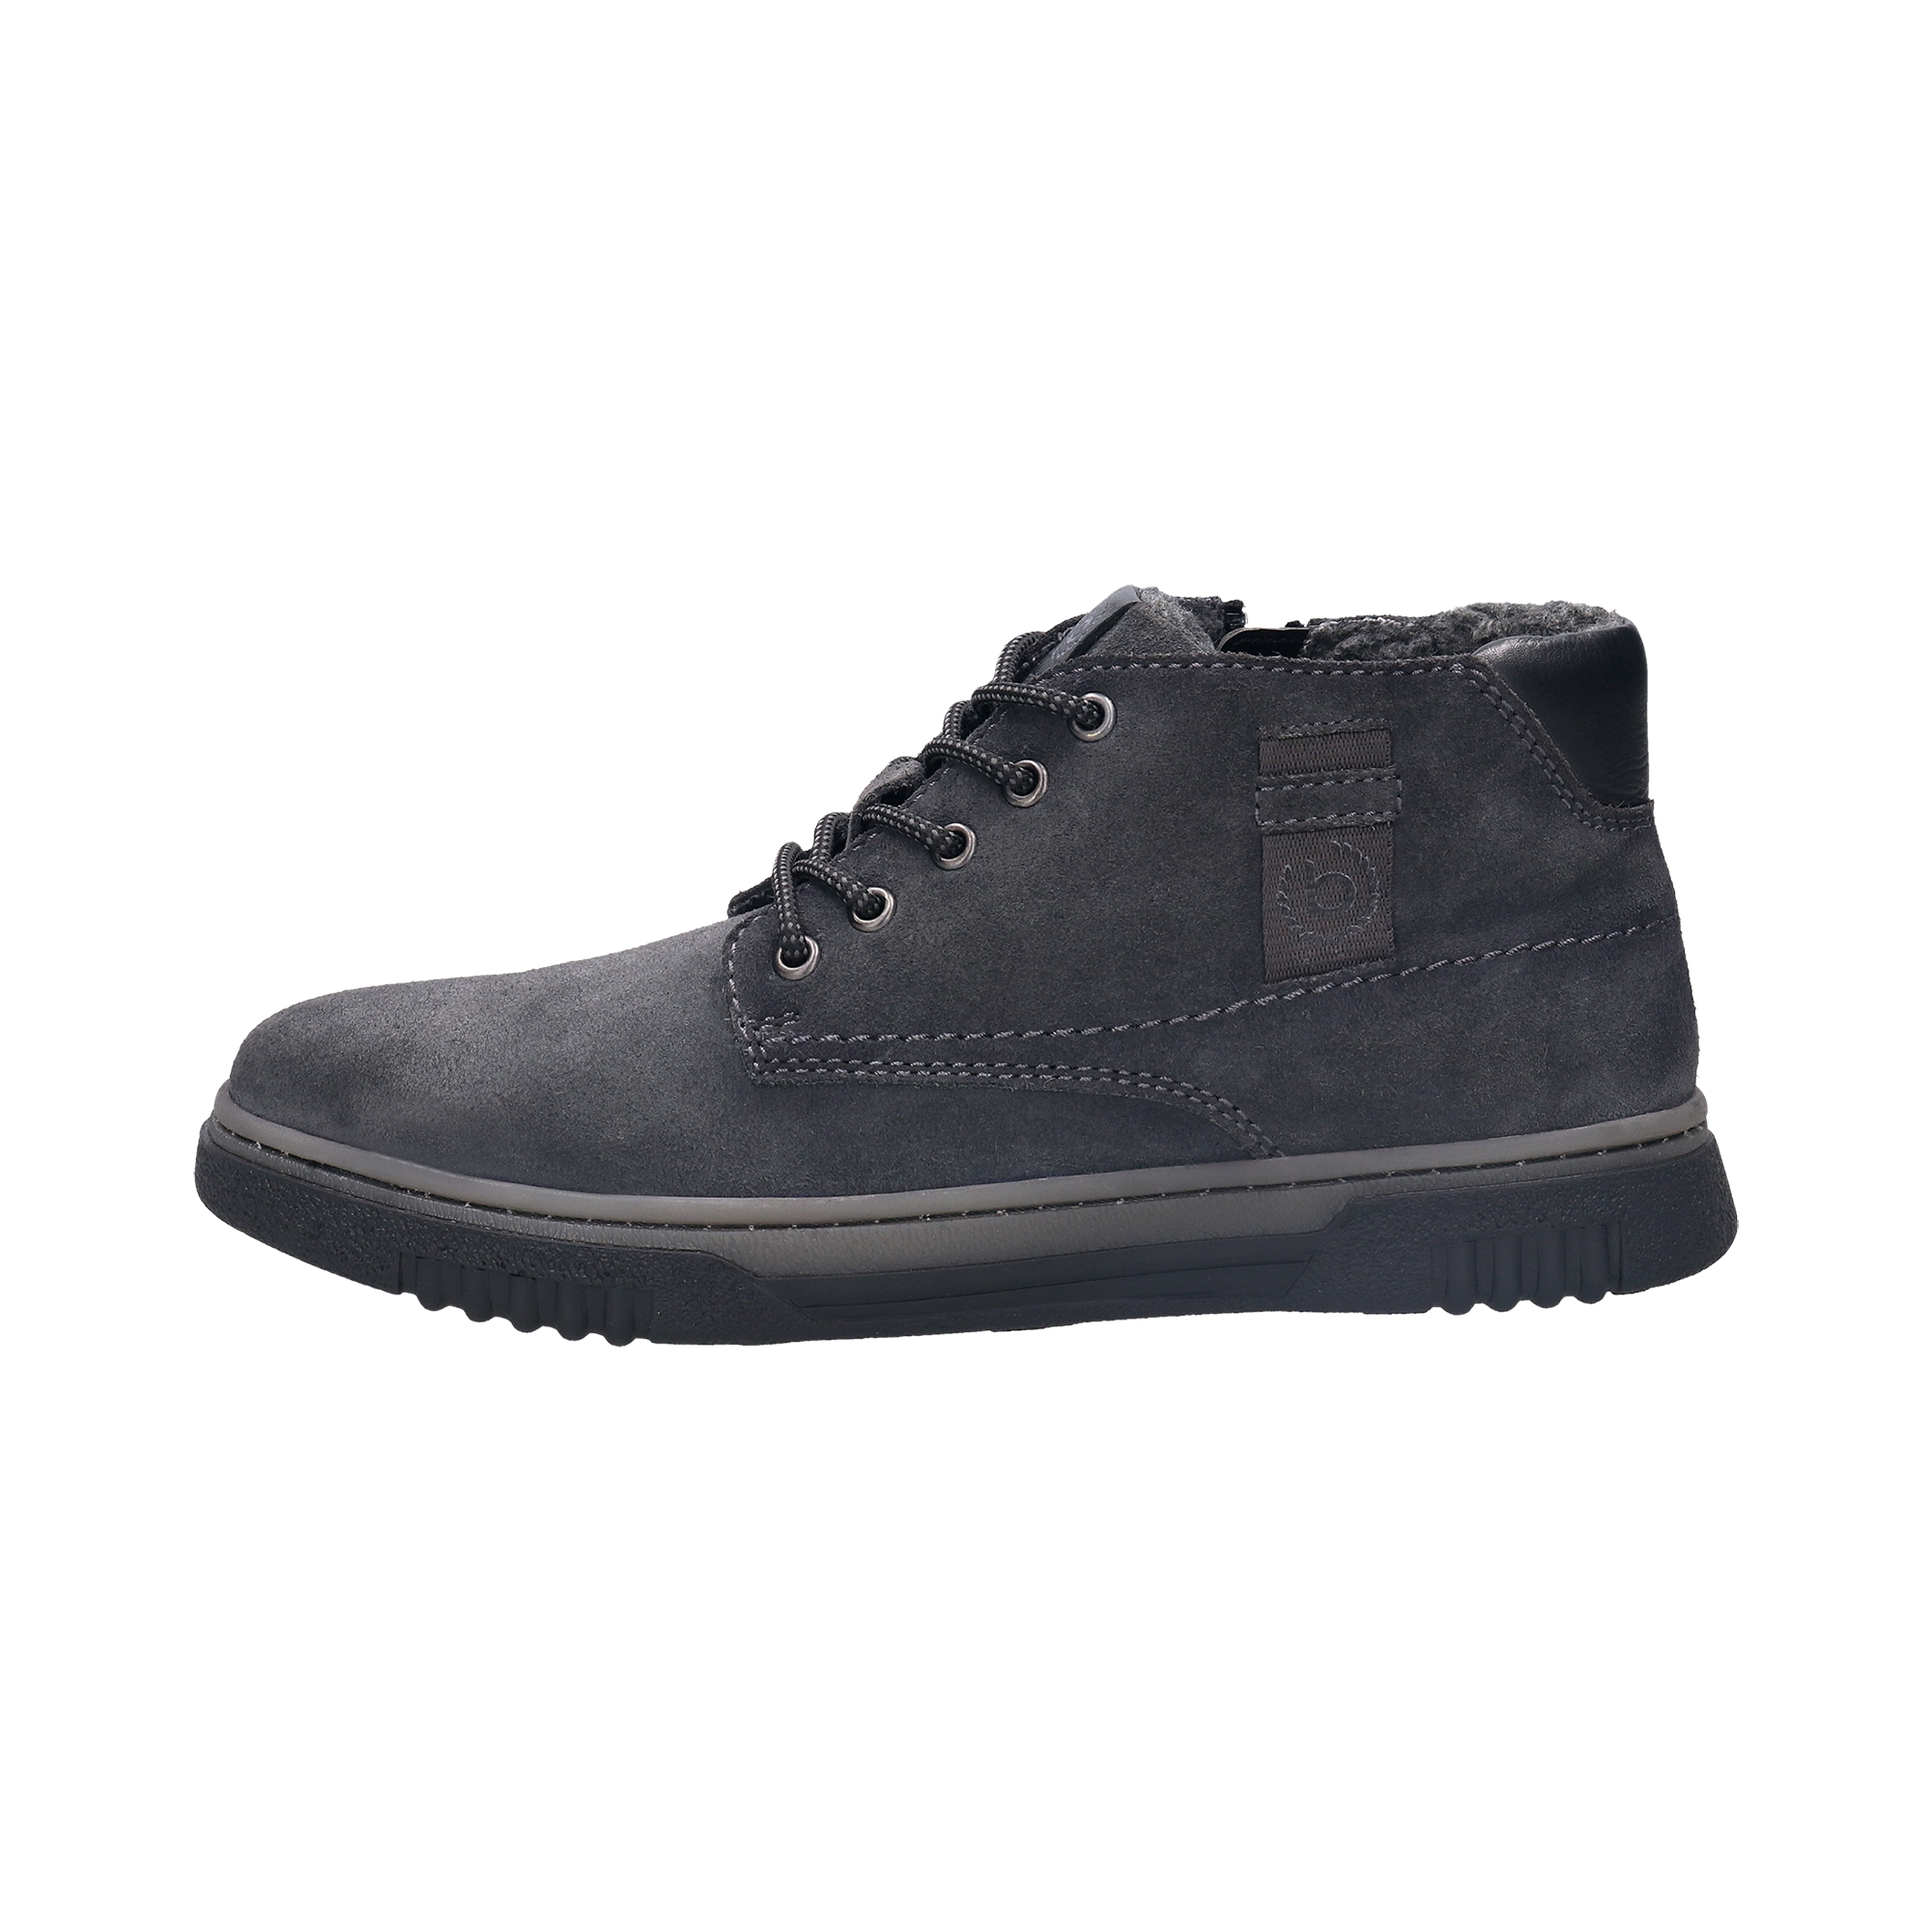 Ohio boots dark gray – bugatti shoes